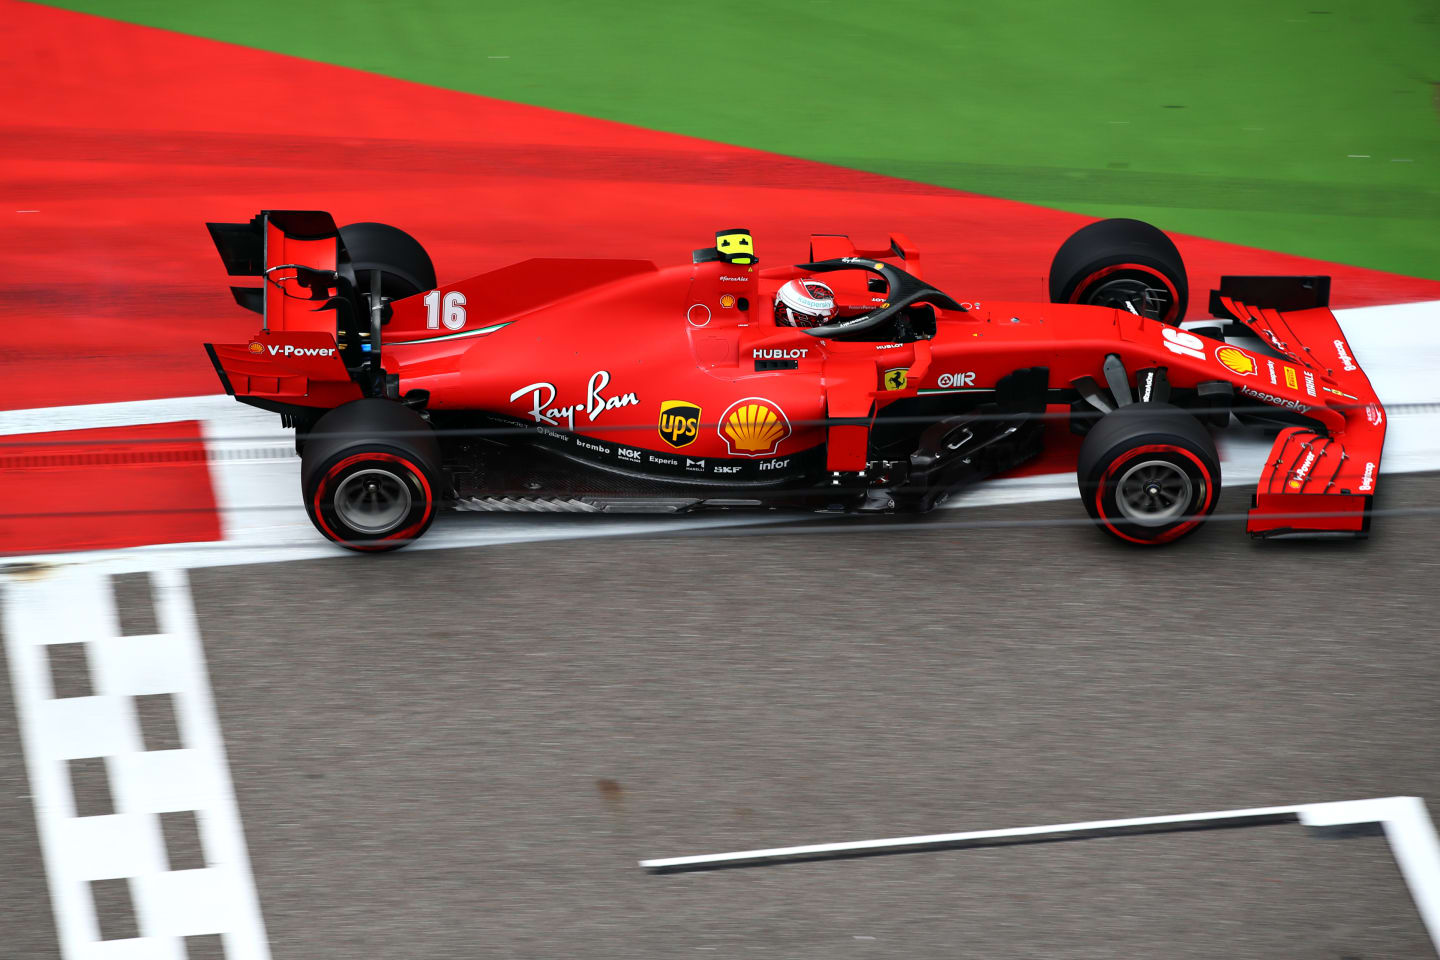 SOCHI, RUSSIA - SEPTEMBER 26: Charles Leclerc of Monaco driving the (16) Scuderia Ferrari SF1000